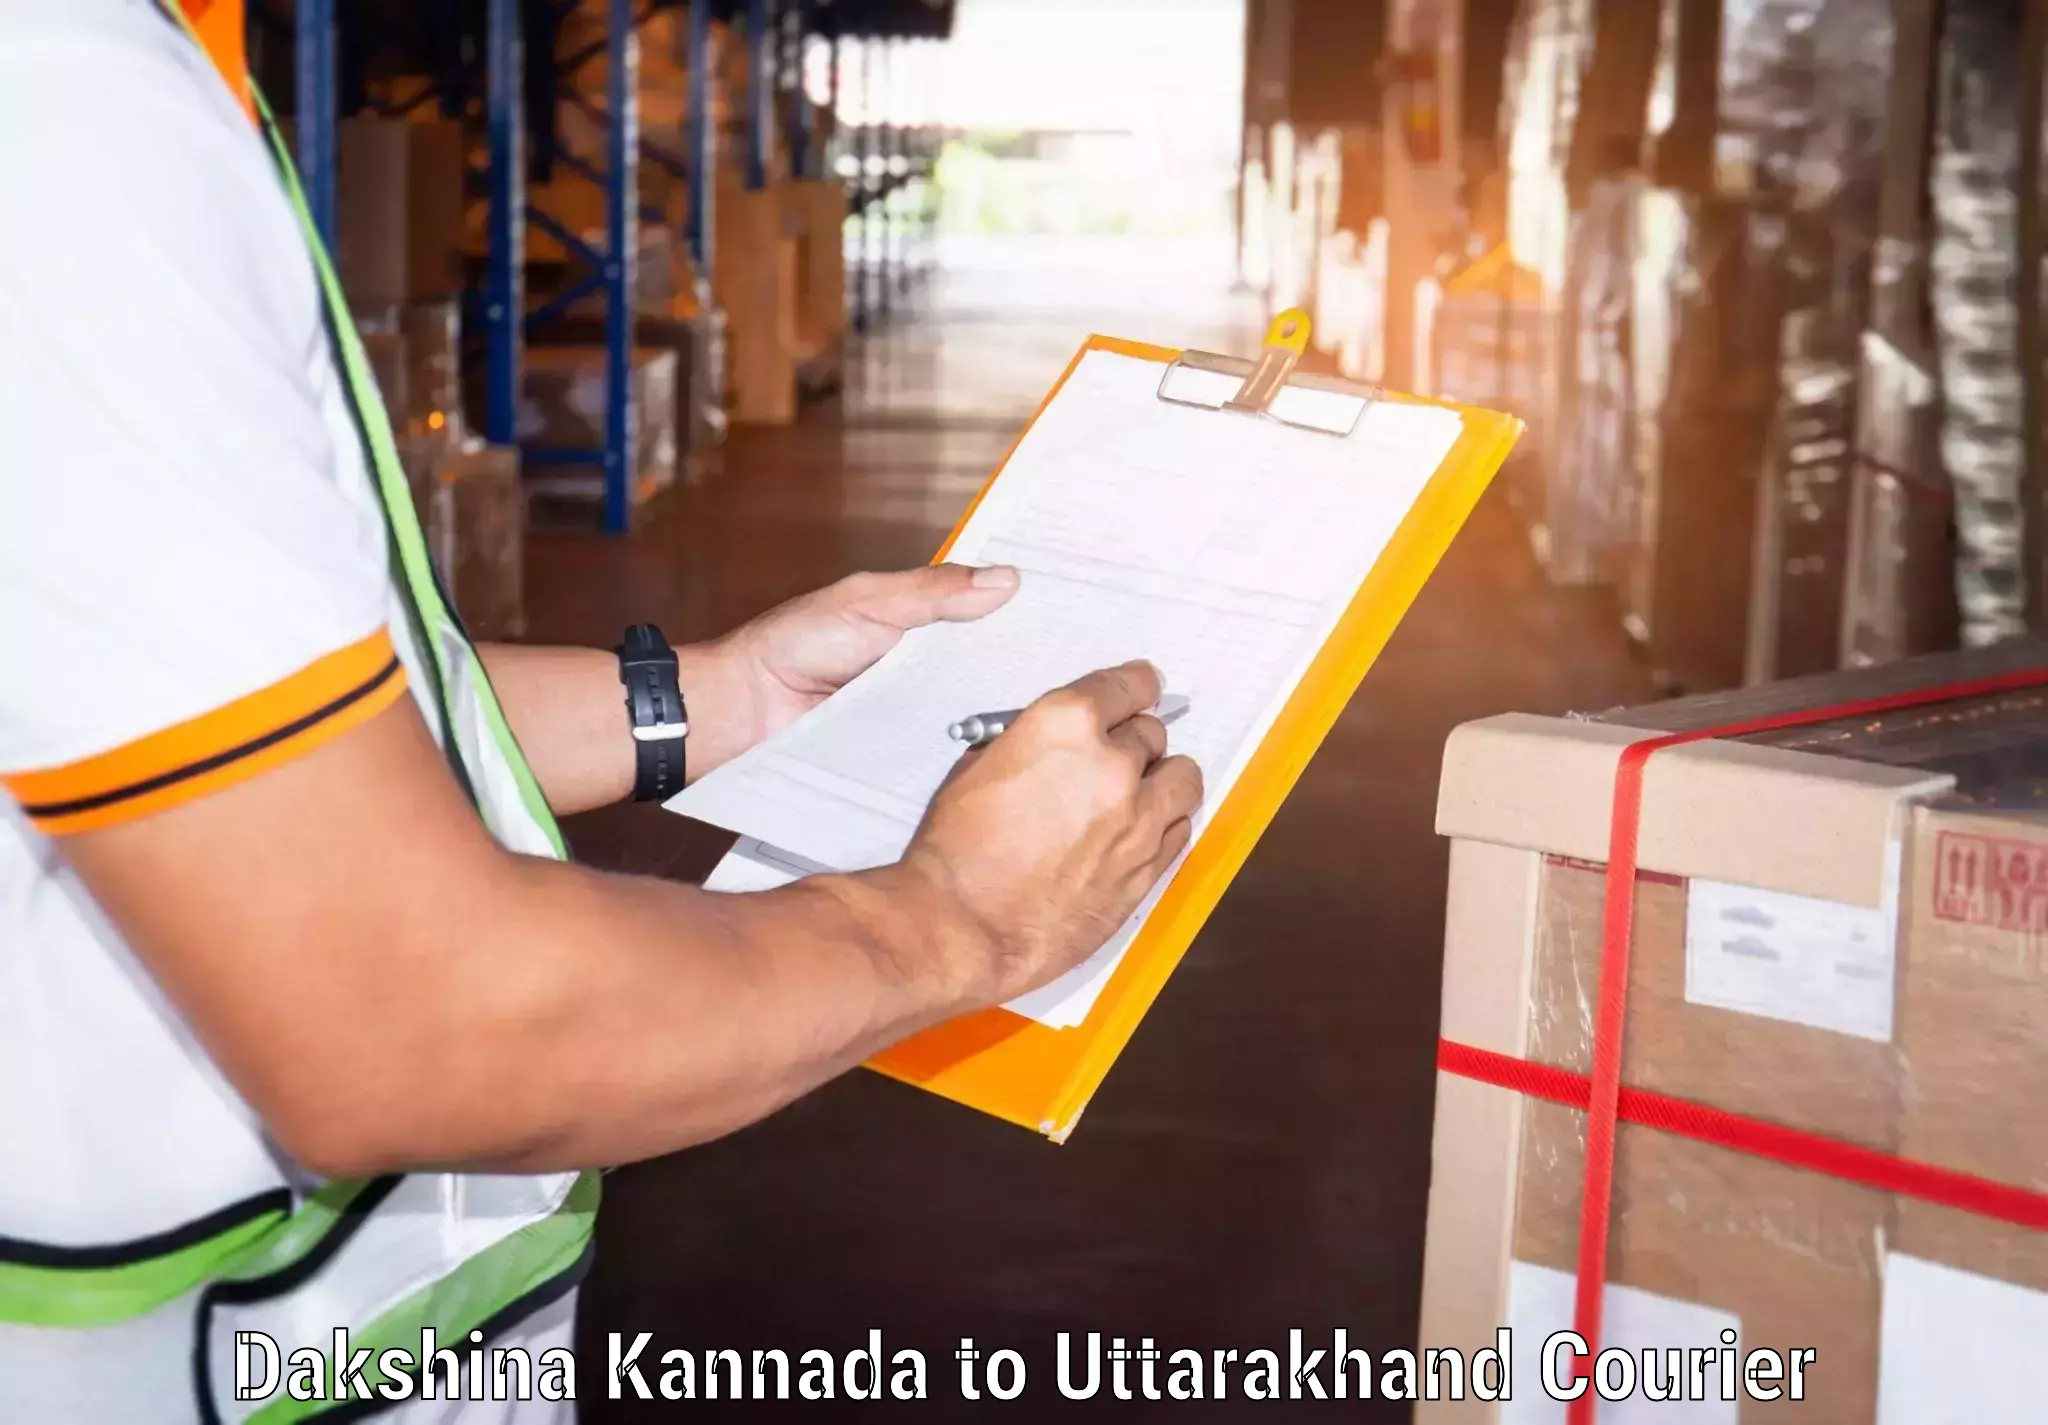 Logistics service provider Dakshina Kannada to Gumkhal